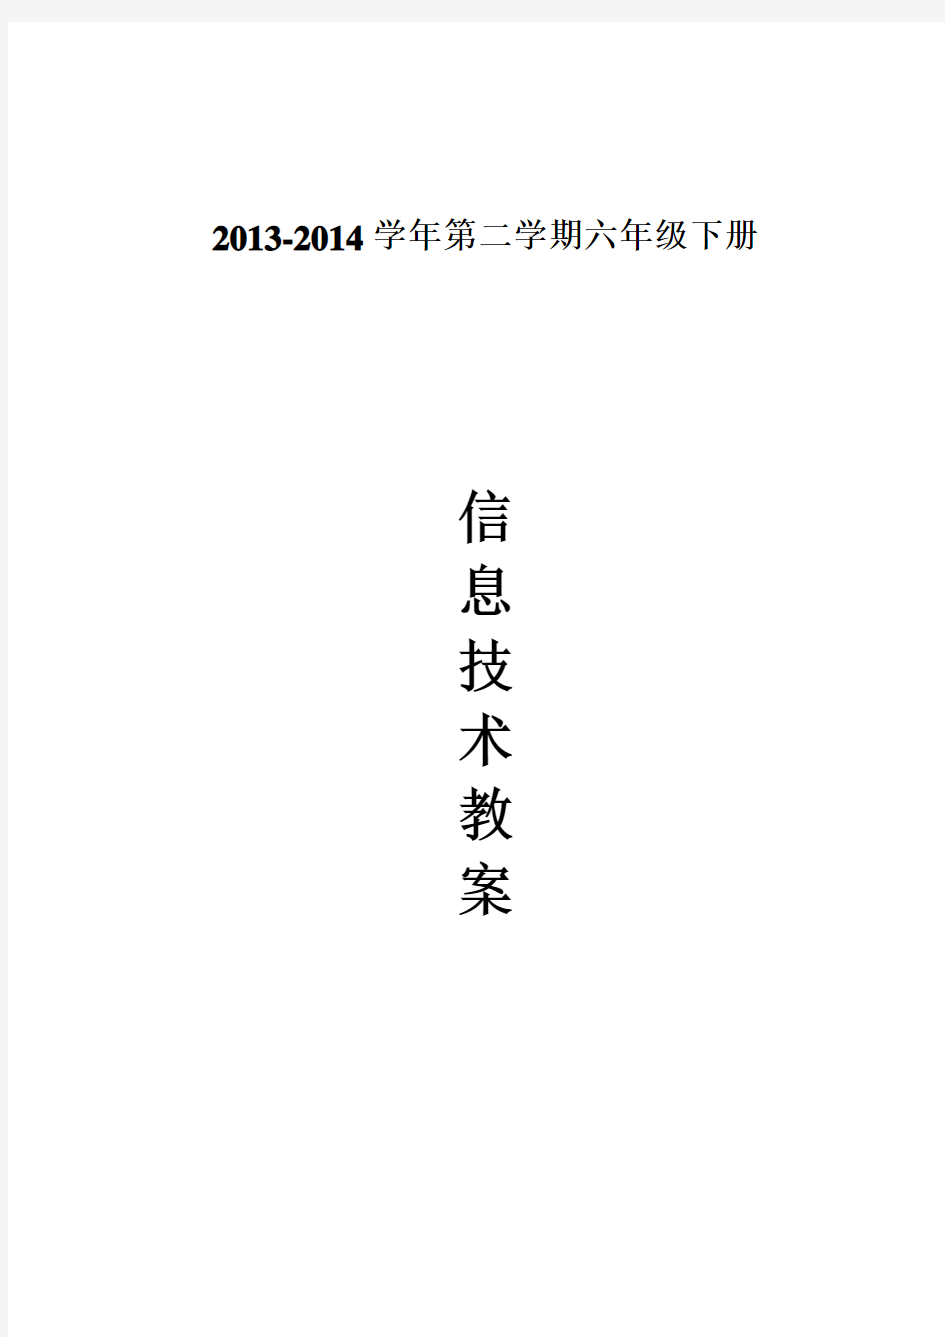 2013-14闽教版小学信息技术六年级下册教案(2015-6-15 19-52-24)